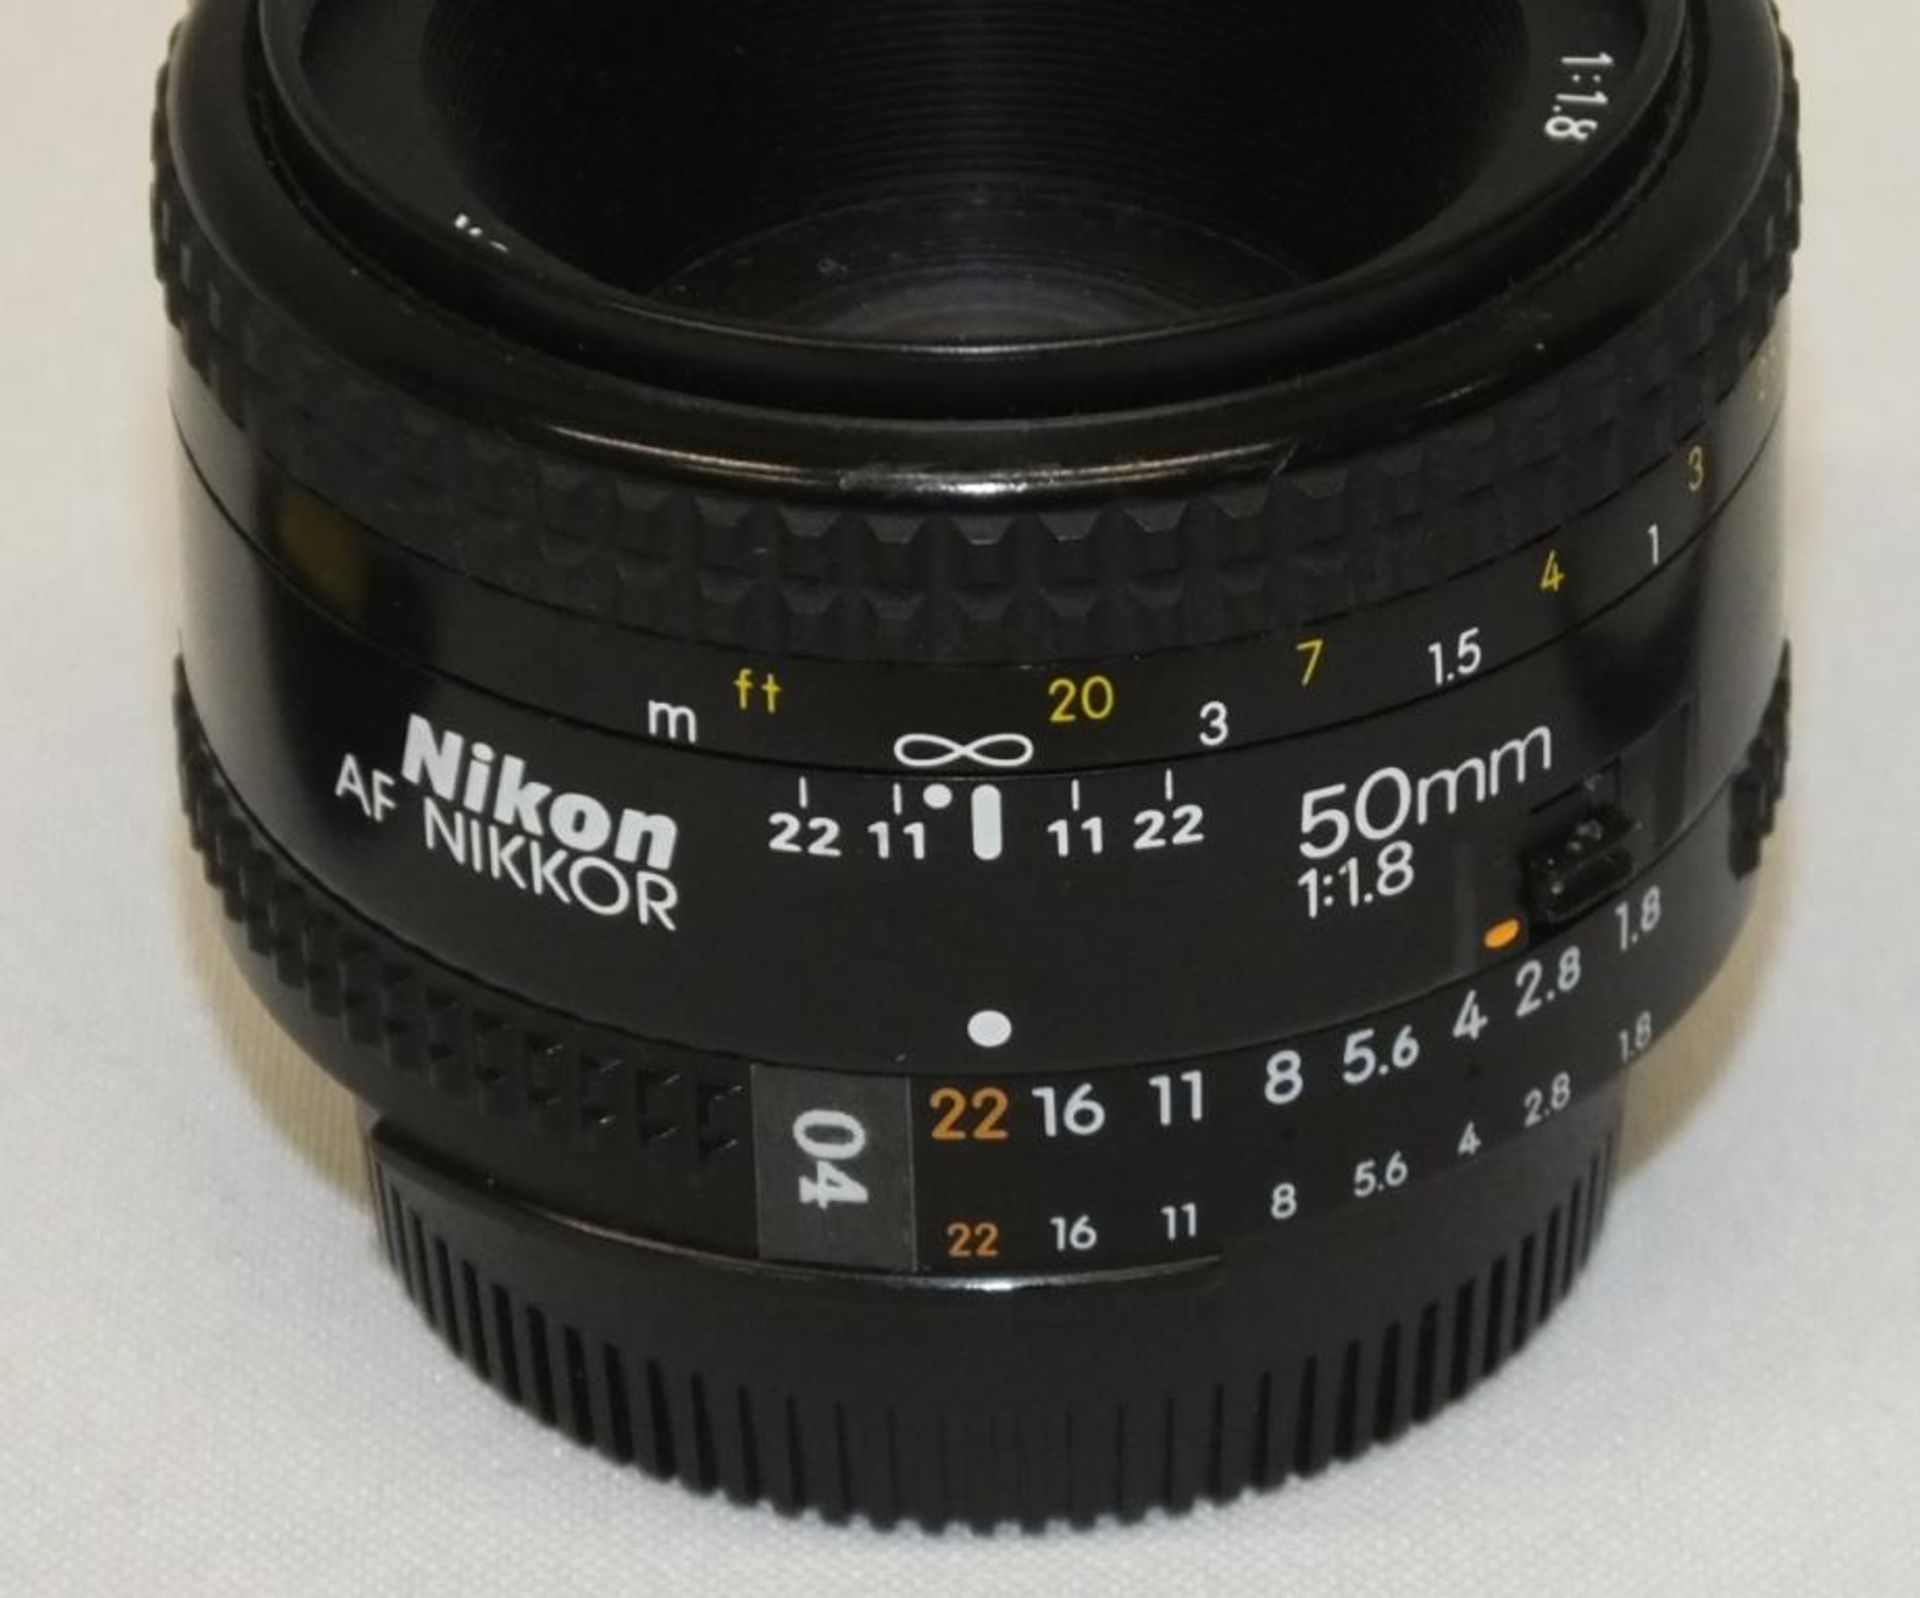 Nikon AF Nikkor 50mm - 1:1.8 Lens - Serial No. 4289700 with Nikon L37c 52mm Filter - Image 2 of 4